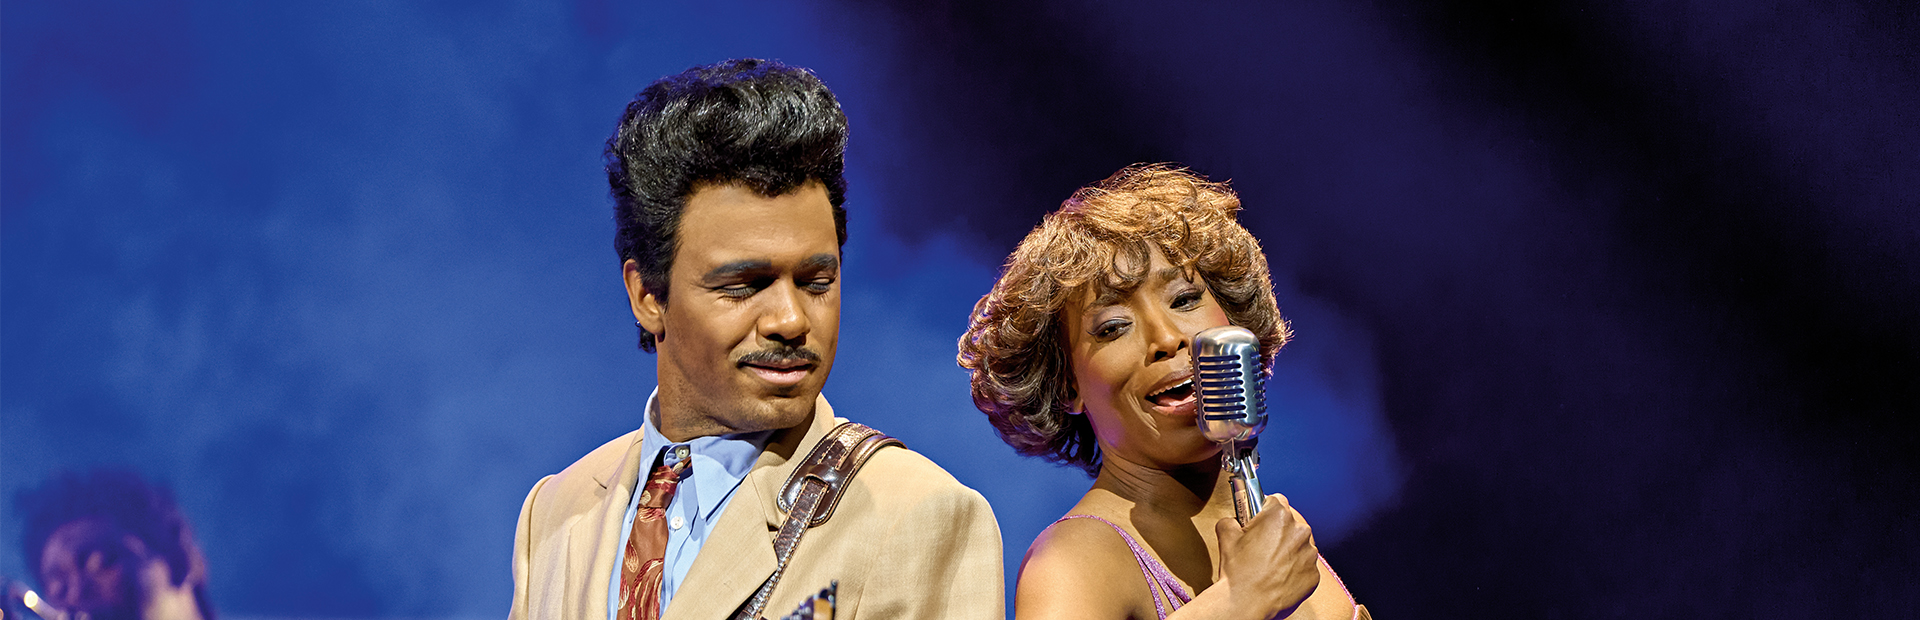 Tina Turner singend mit Ike Turner auf der Bühne - Live-Performance